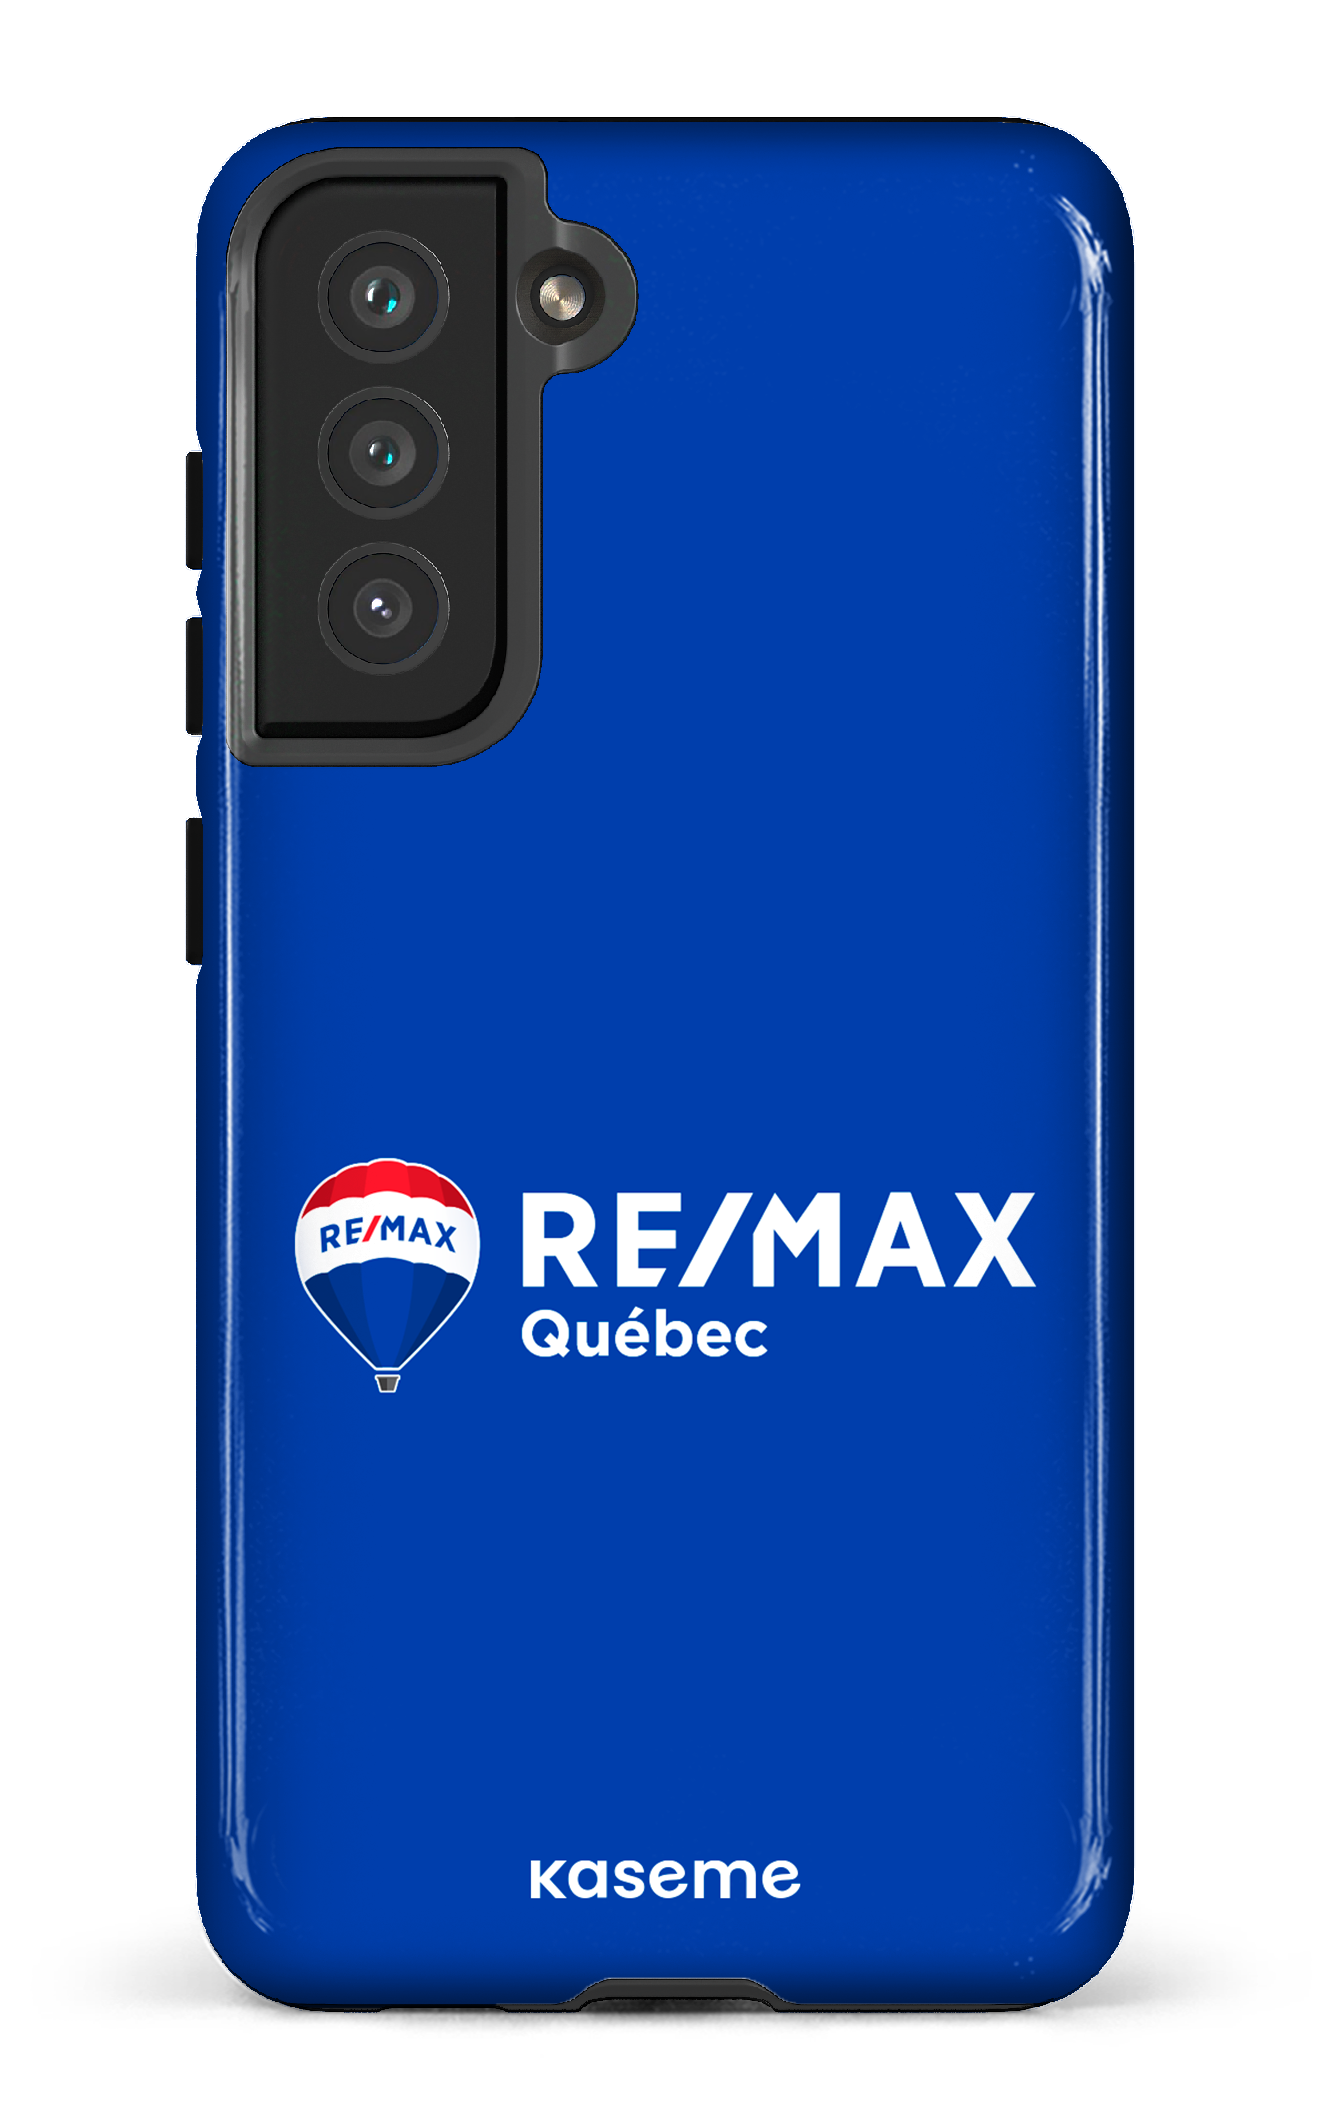 Remax Québec Bleu - Galaxy S21 FE